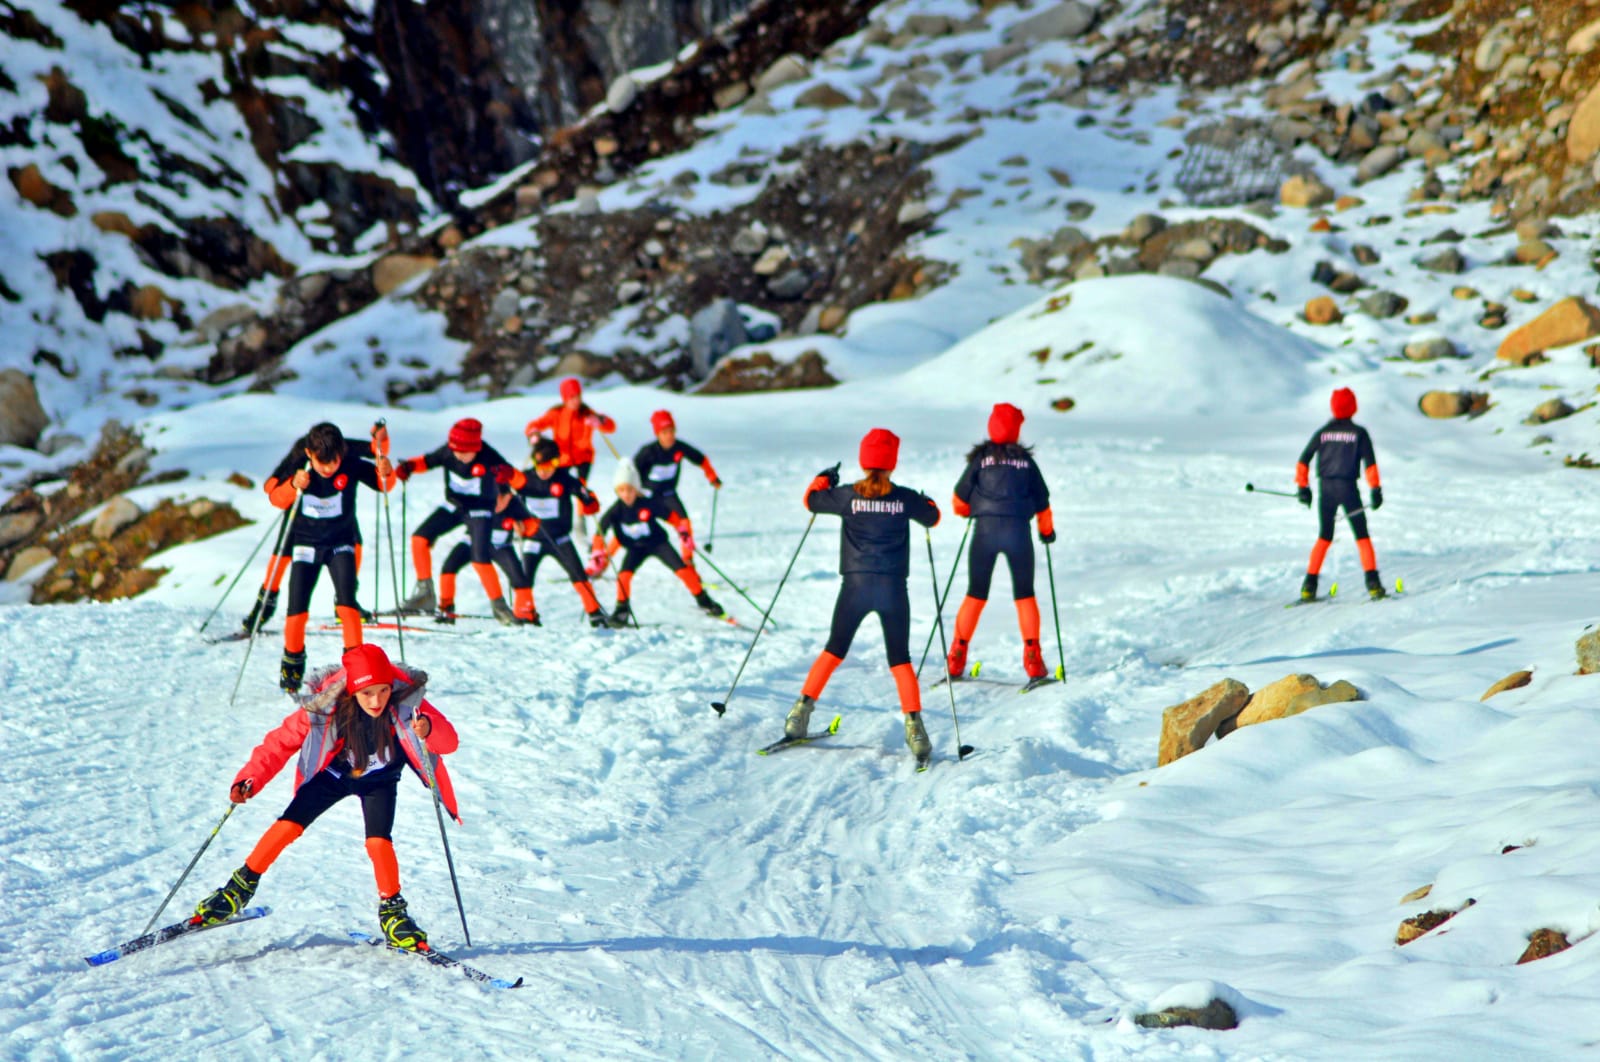 RİZE kayak kulüpleri ' Kayak Kulüpleri Birliğine ' Üye oldu.